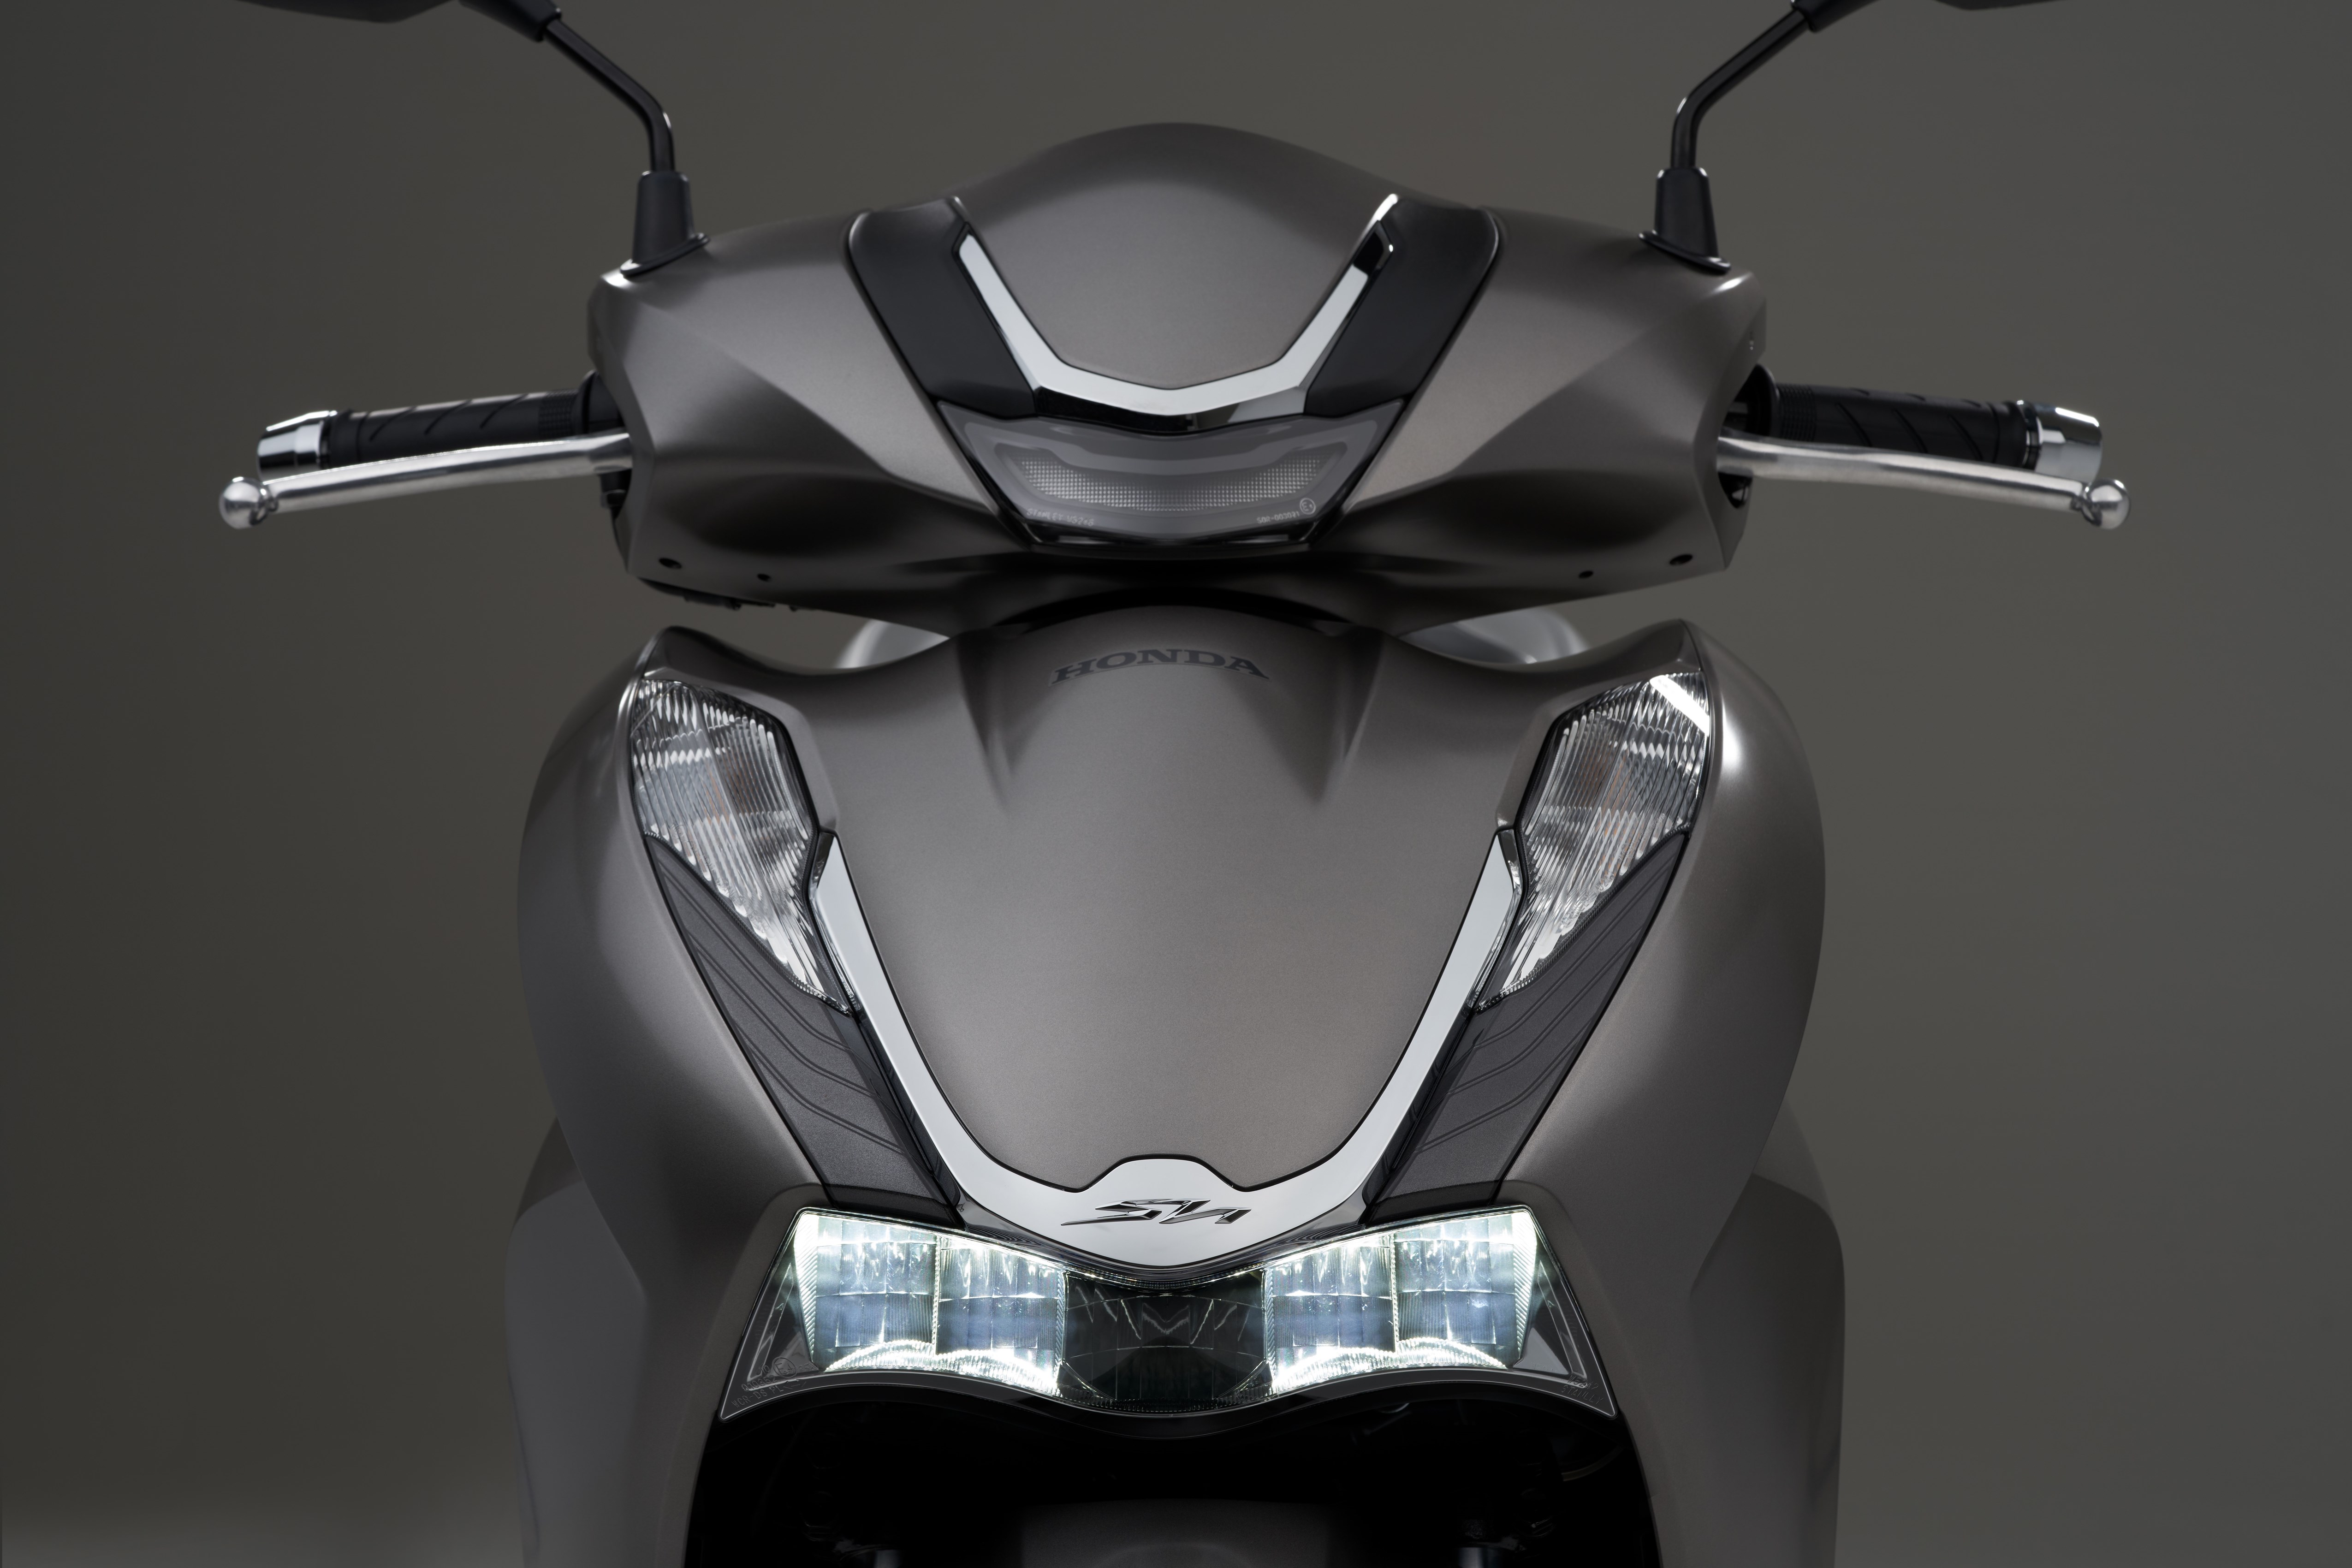 Honda SH 350i / Mode 125i 2021 | MOTOMAG